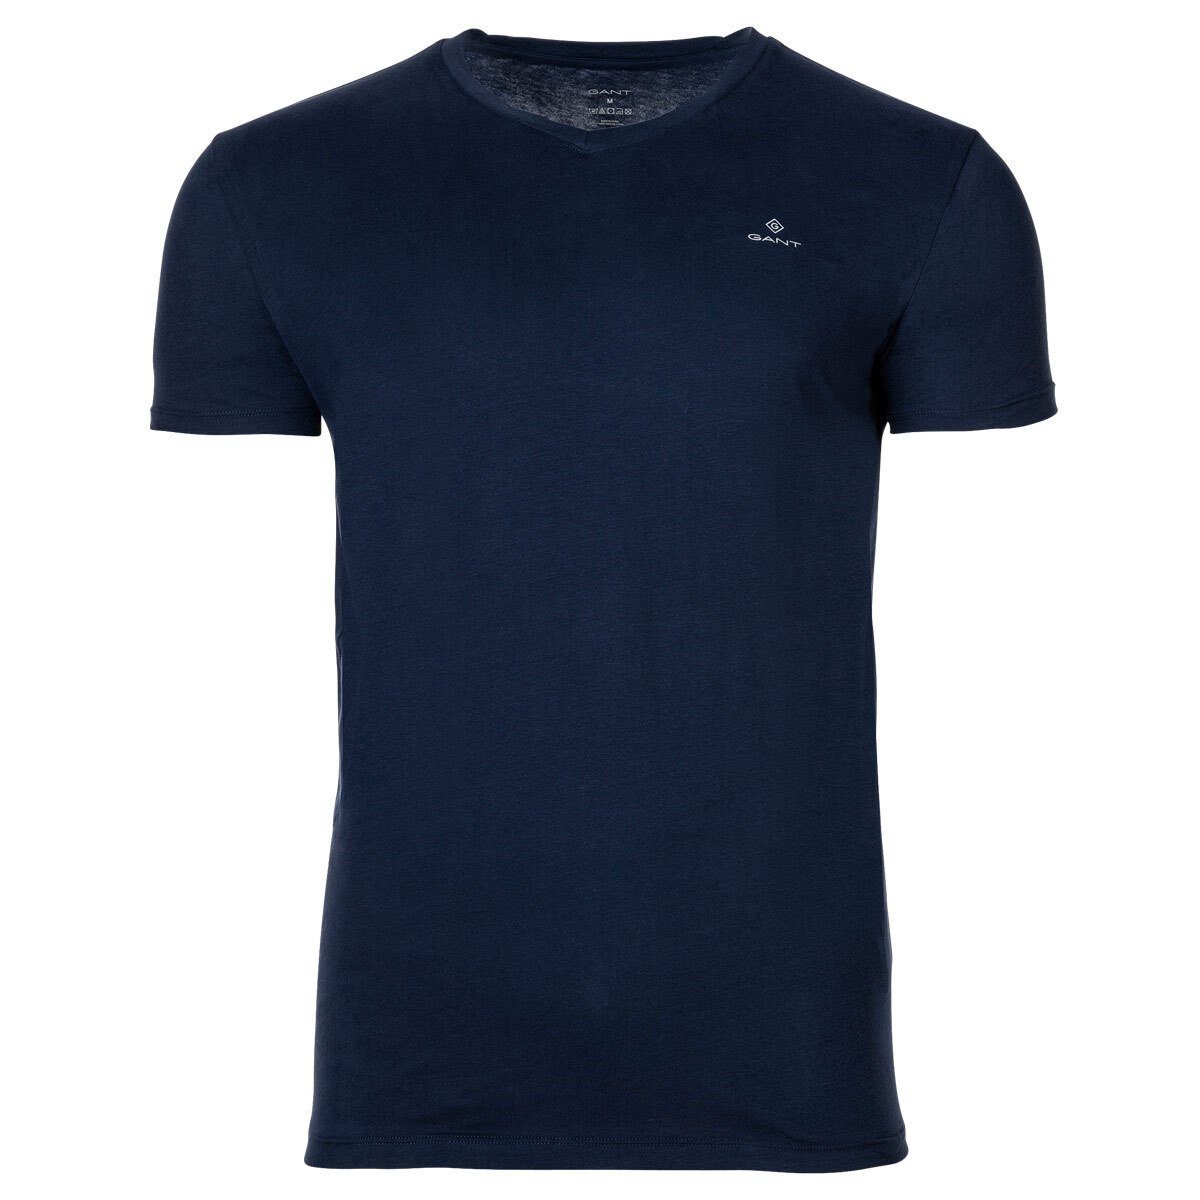 Gant T-Shirt Herren 2er Pack - V-Ausschnitt, V-Neck T-Shirt, Marine/Weiß